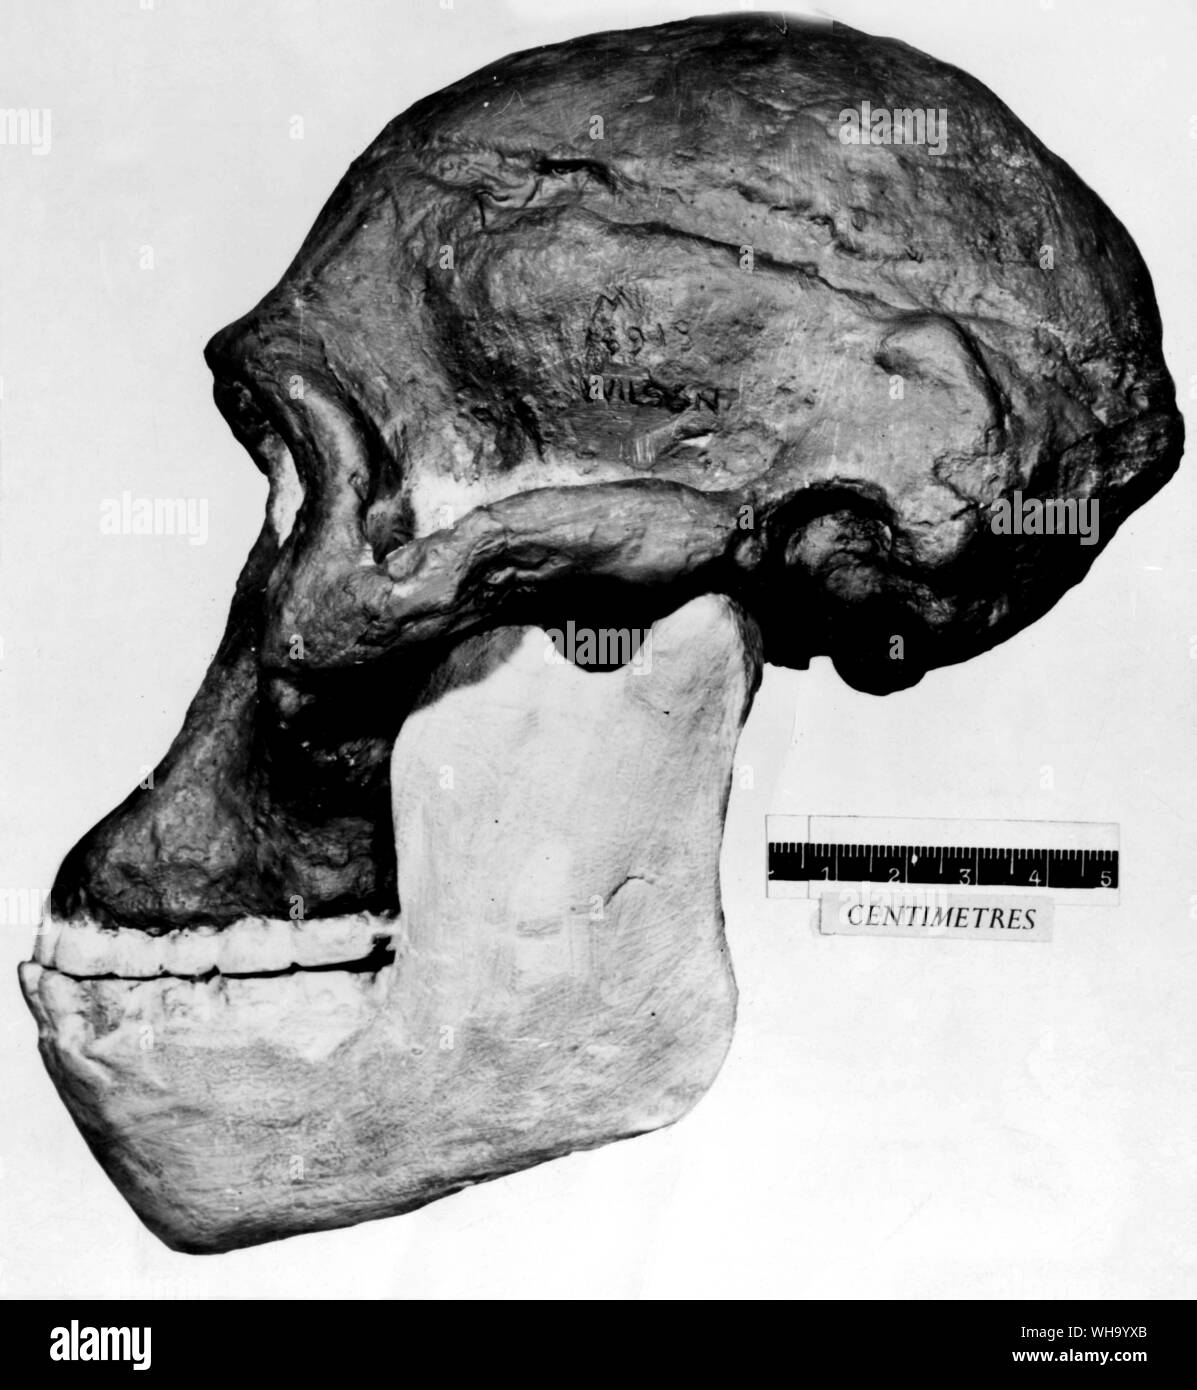 Crâne d'africanus, un homme singe d'Afrique du Sud. Banque D'Images